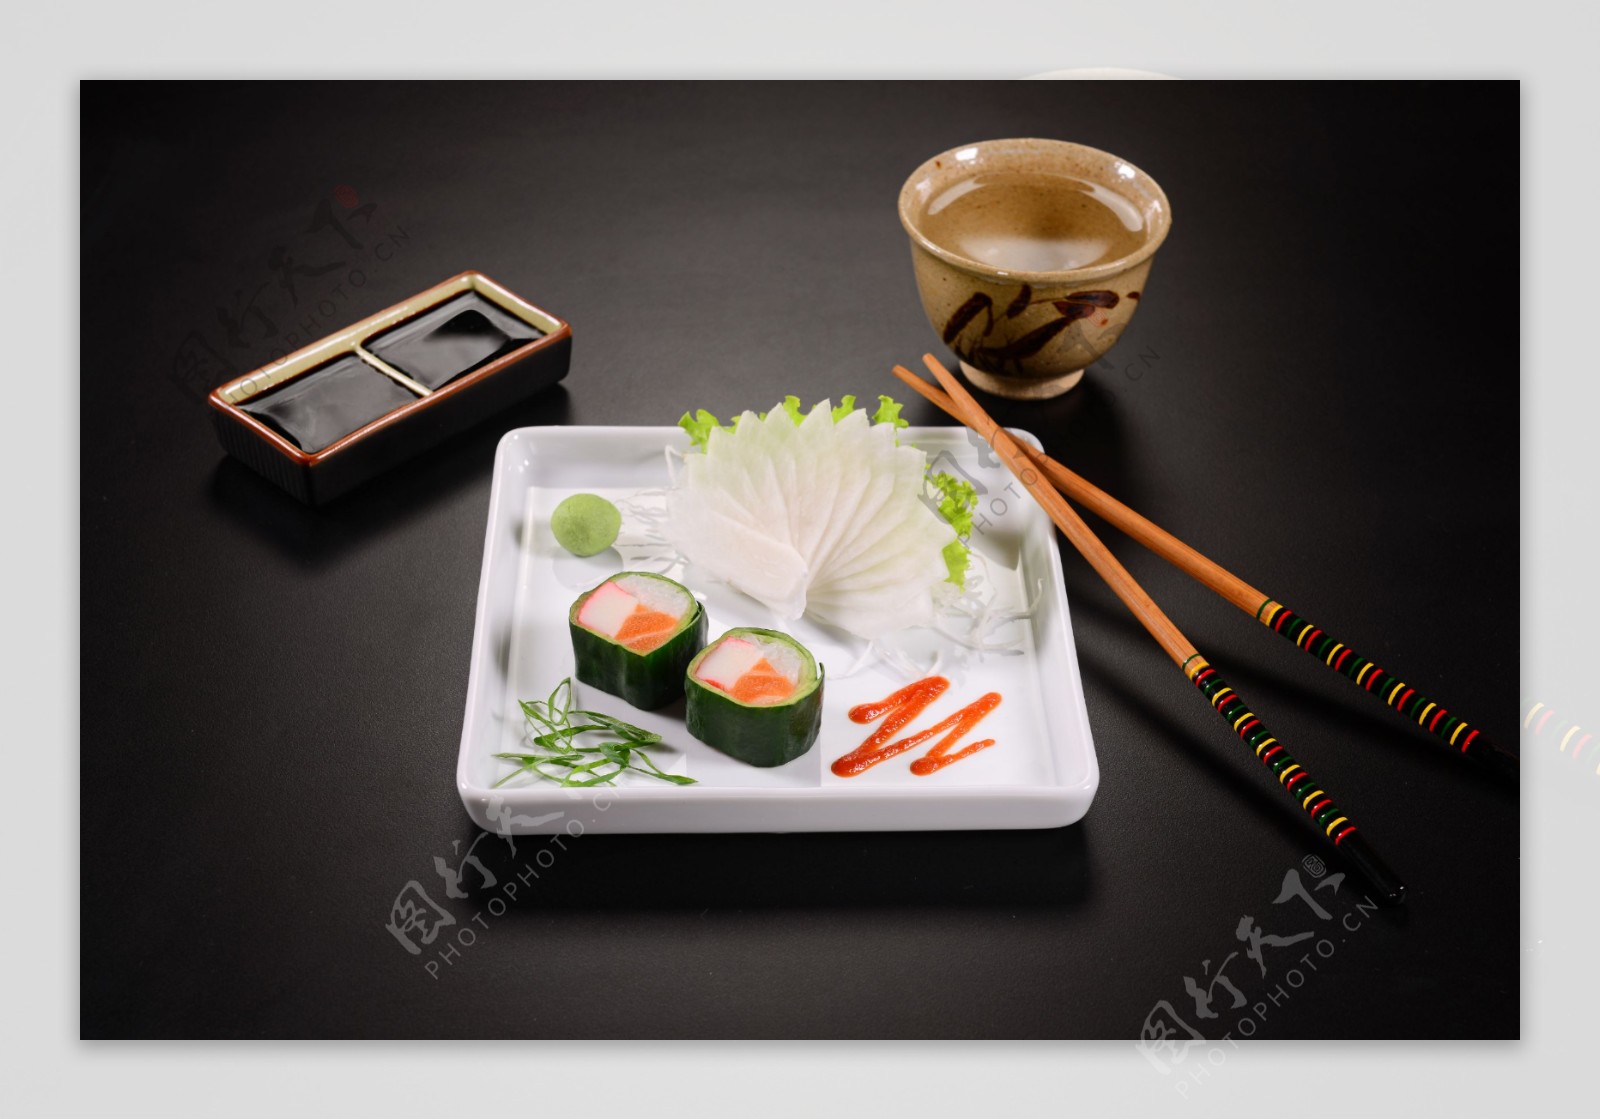 诱人的日本寿司美食